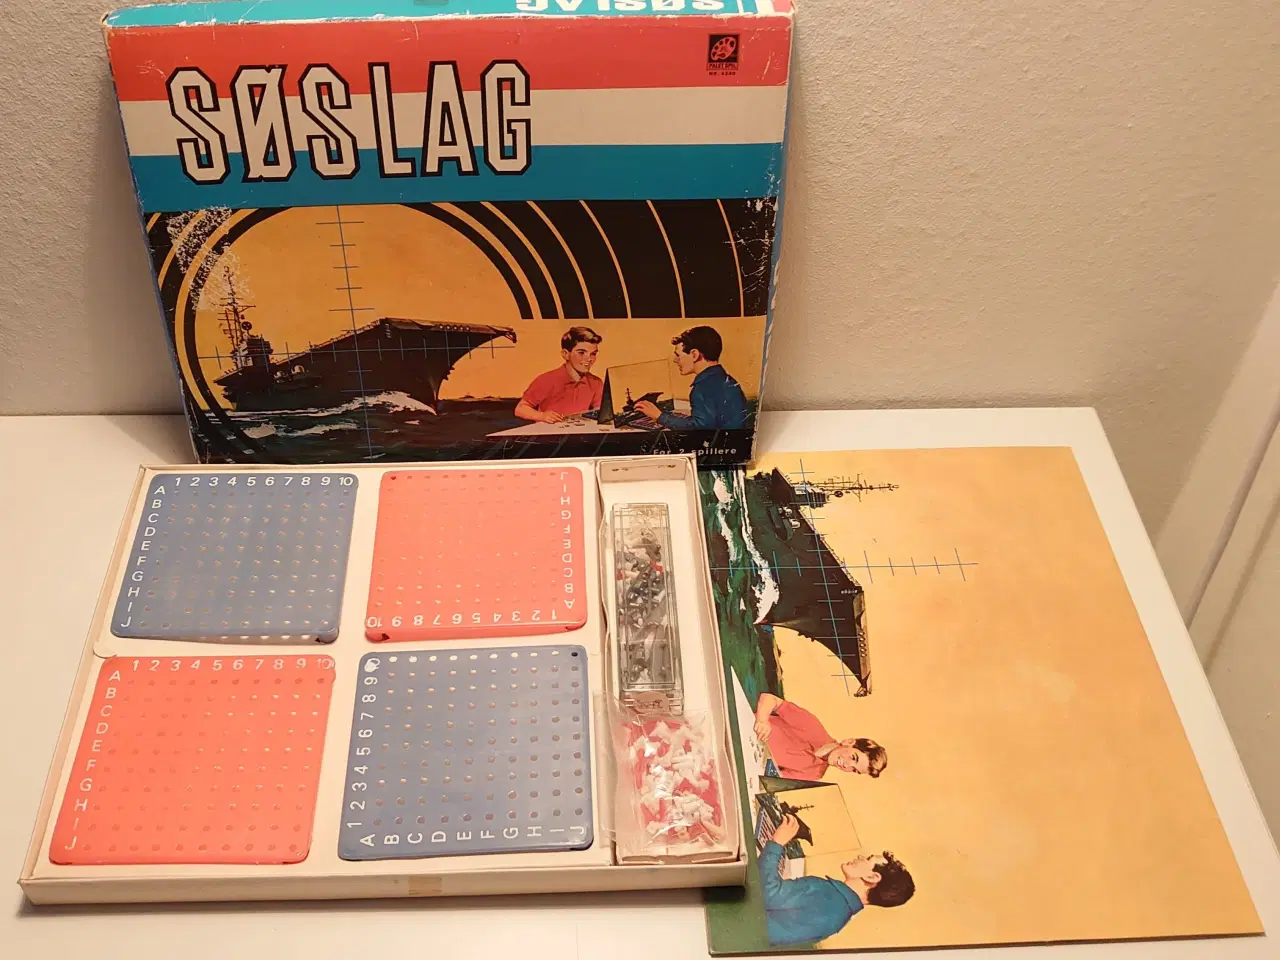 Billede 1 - Retro spillet "Søslag" fra ca. år 1960